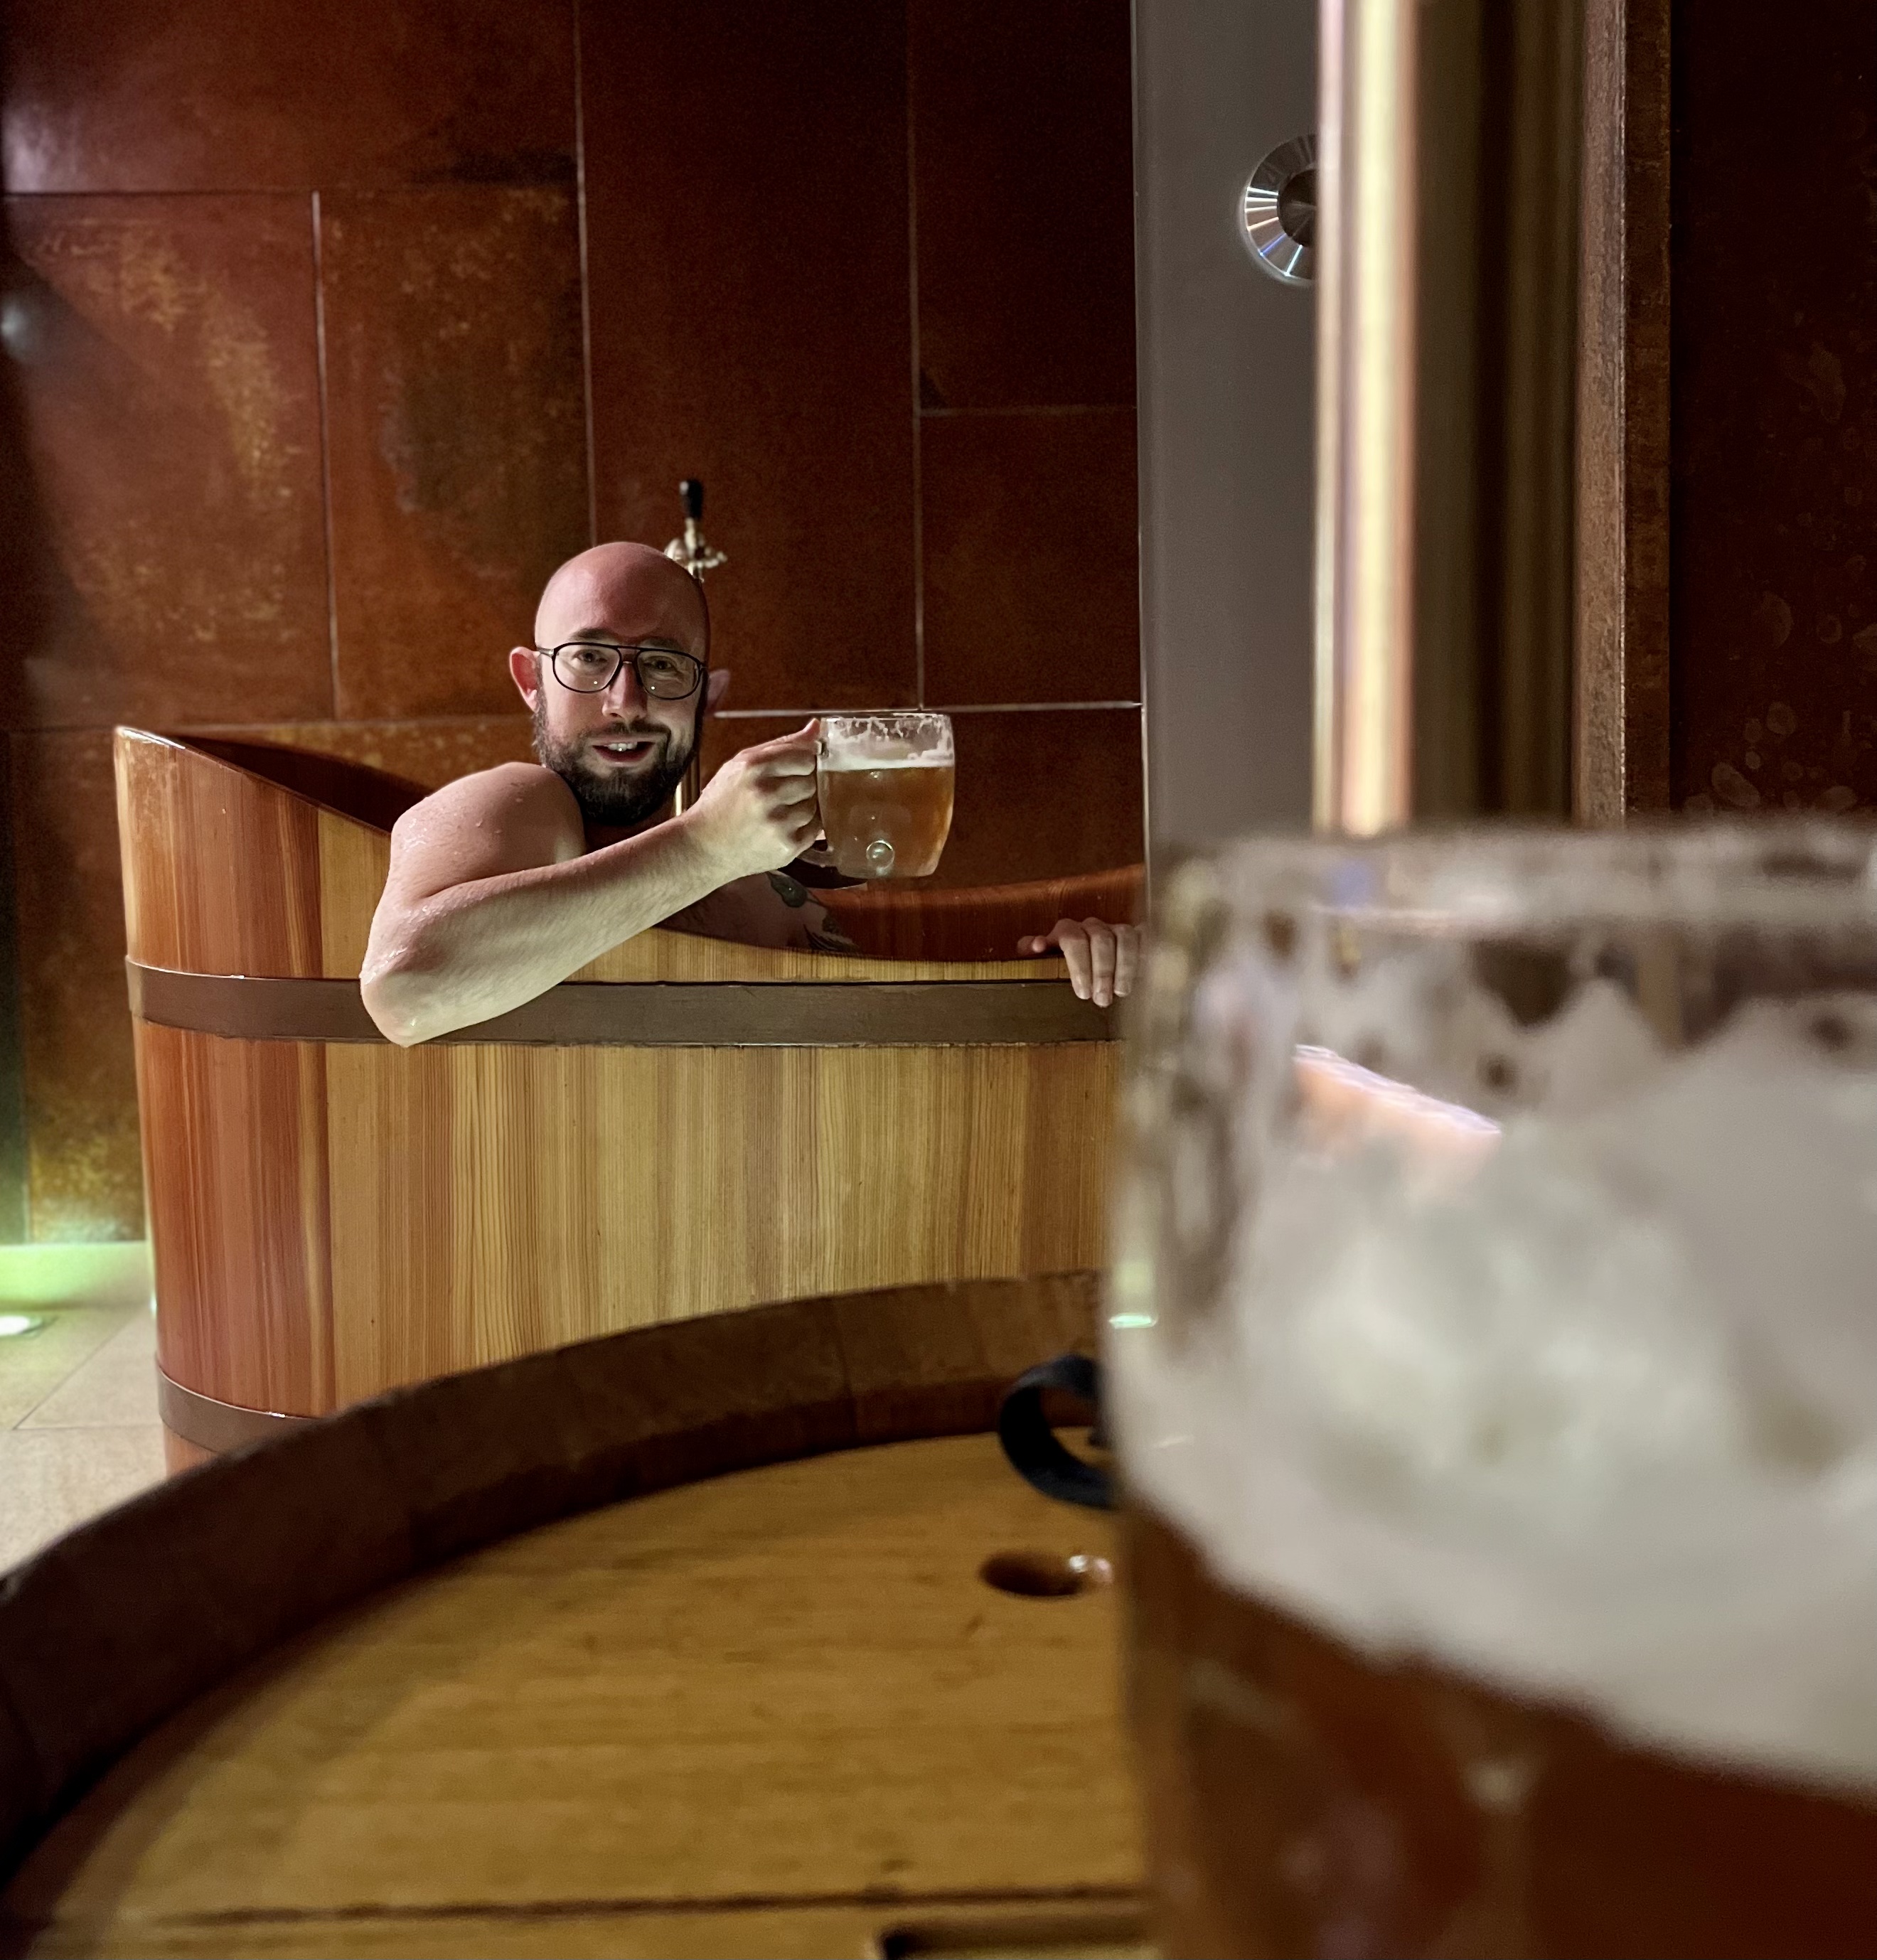 Kurzurlaub in Pilsen: Bierfestival Sun in a Glass, Minibrauereien und Relaxen im Bier-Spa